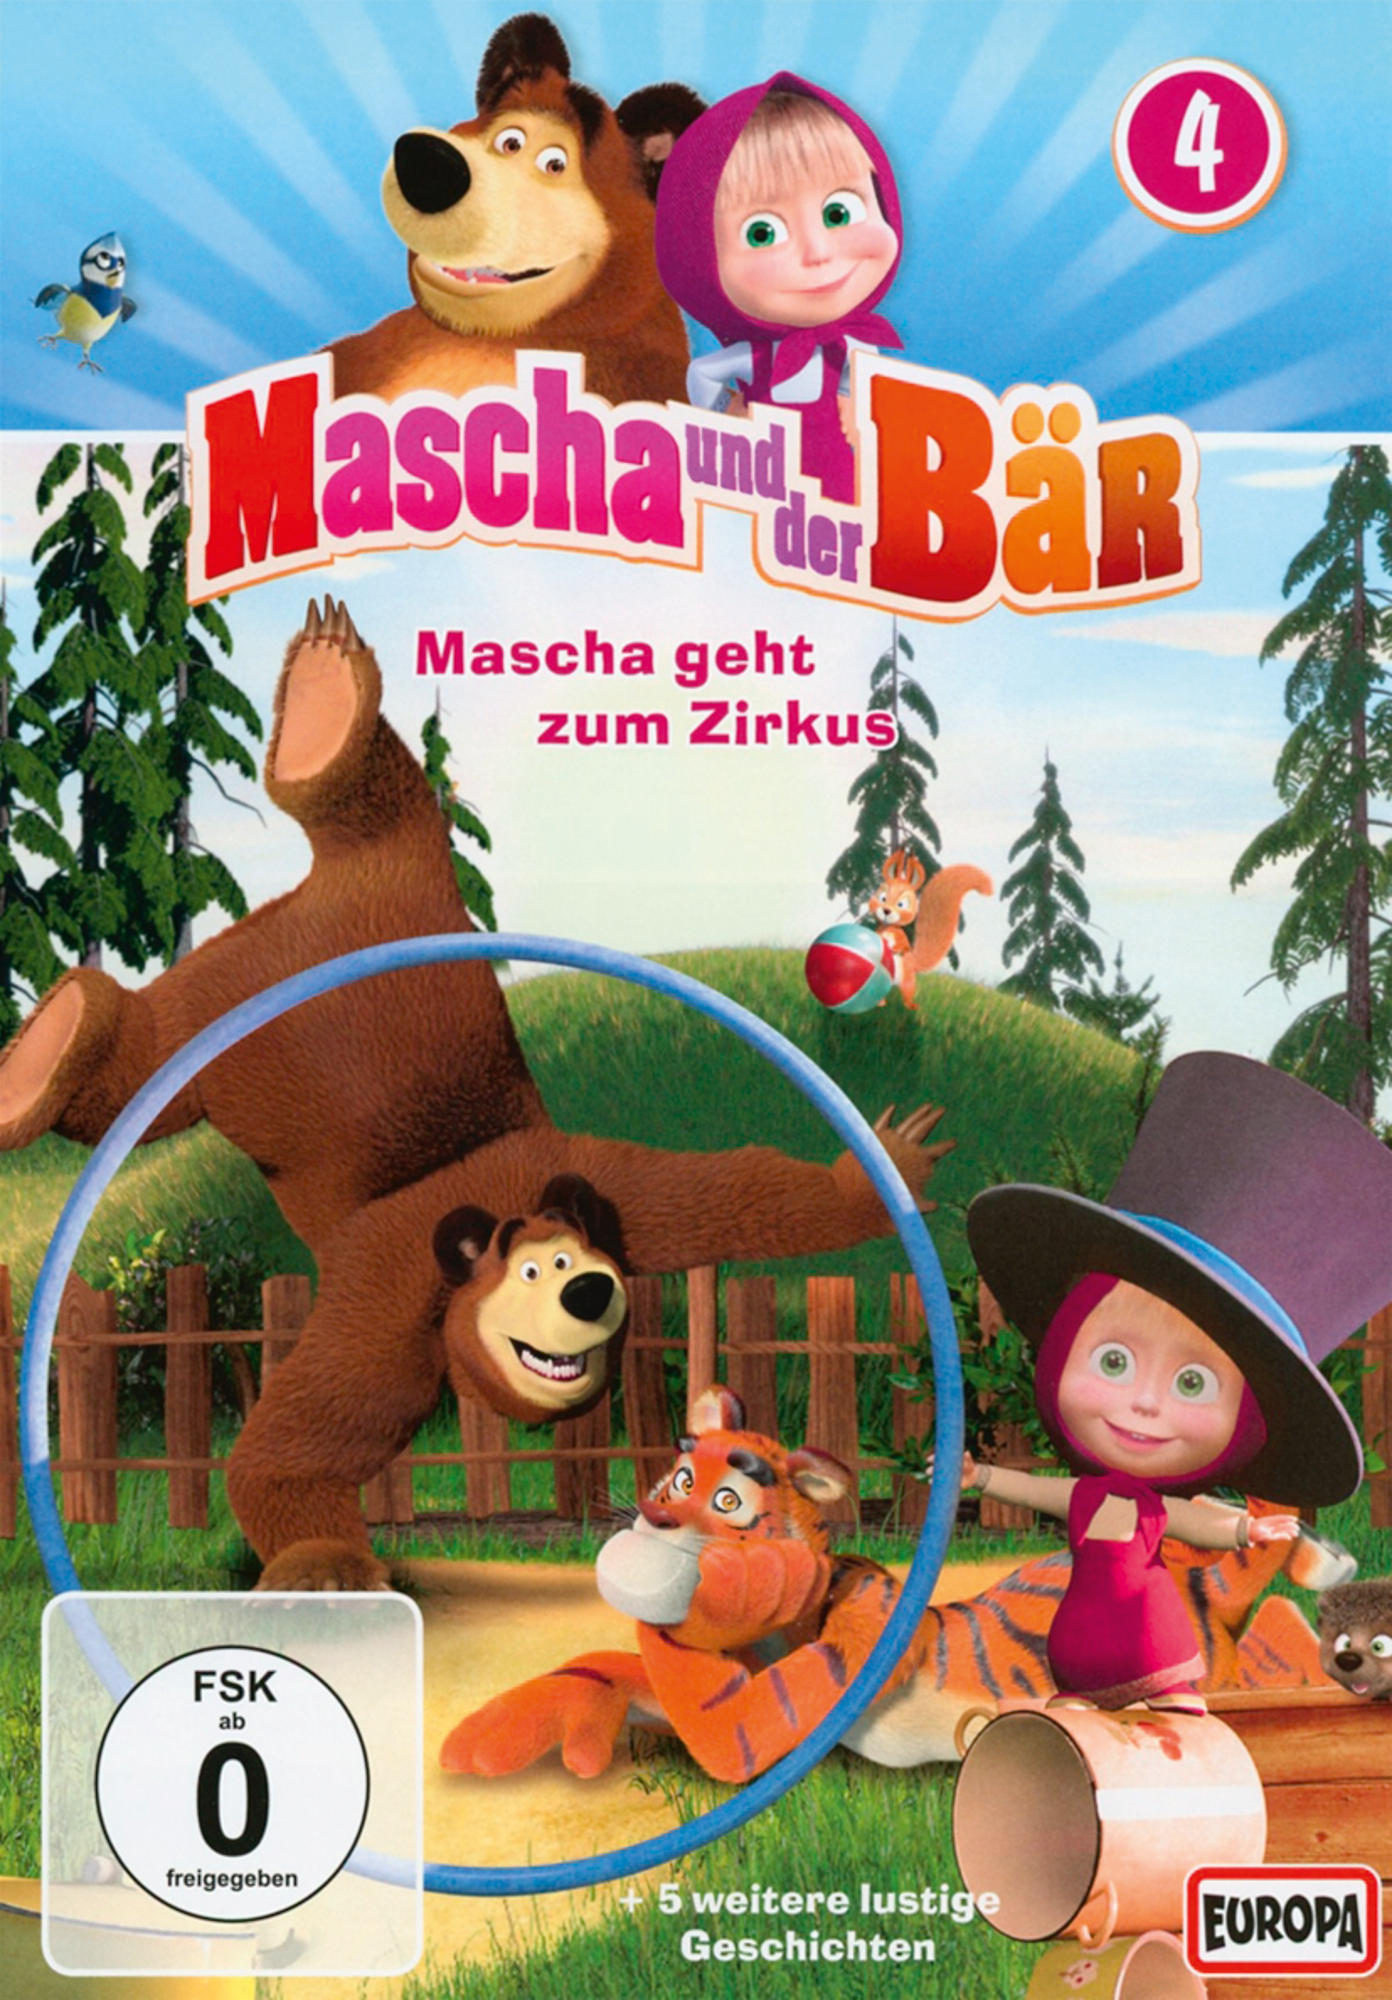 Bär, der DVD Mascha Vol. und 4